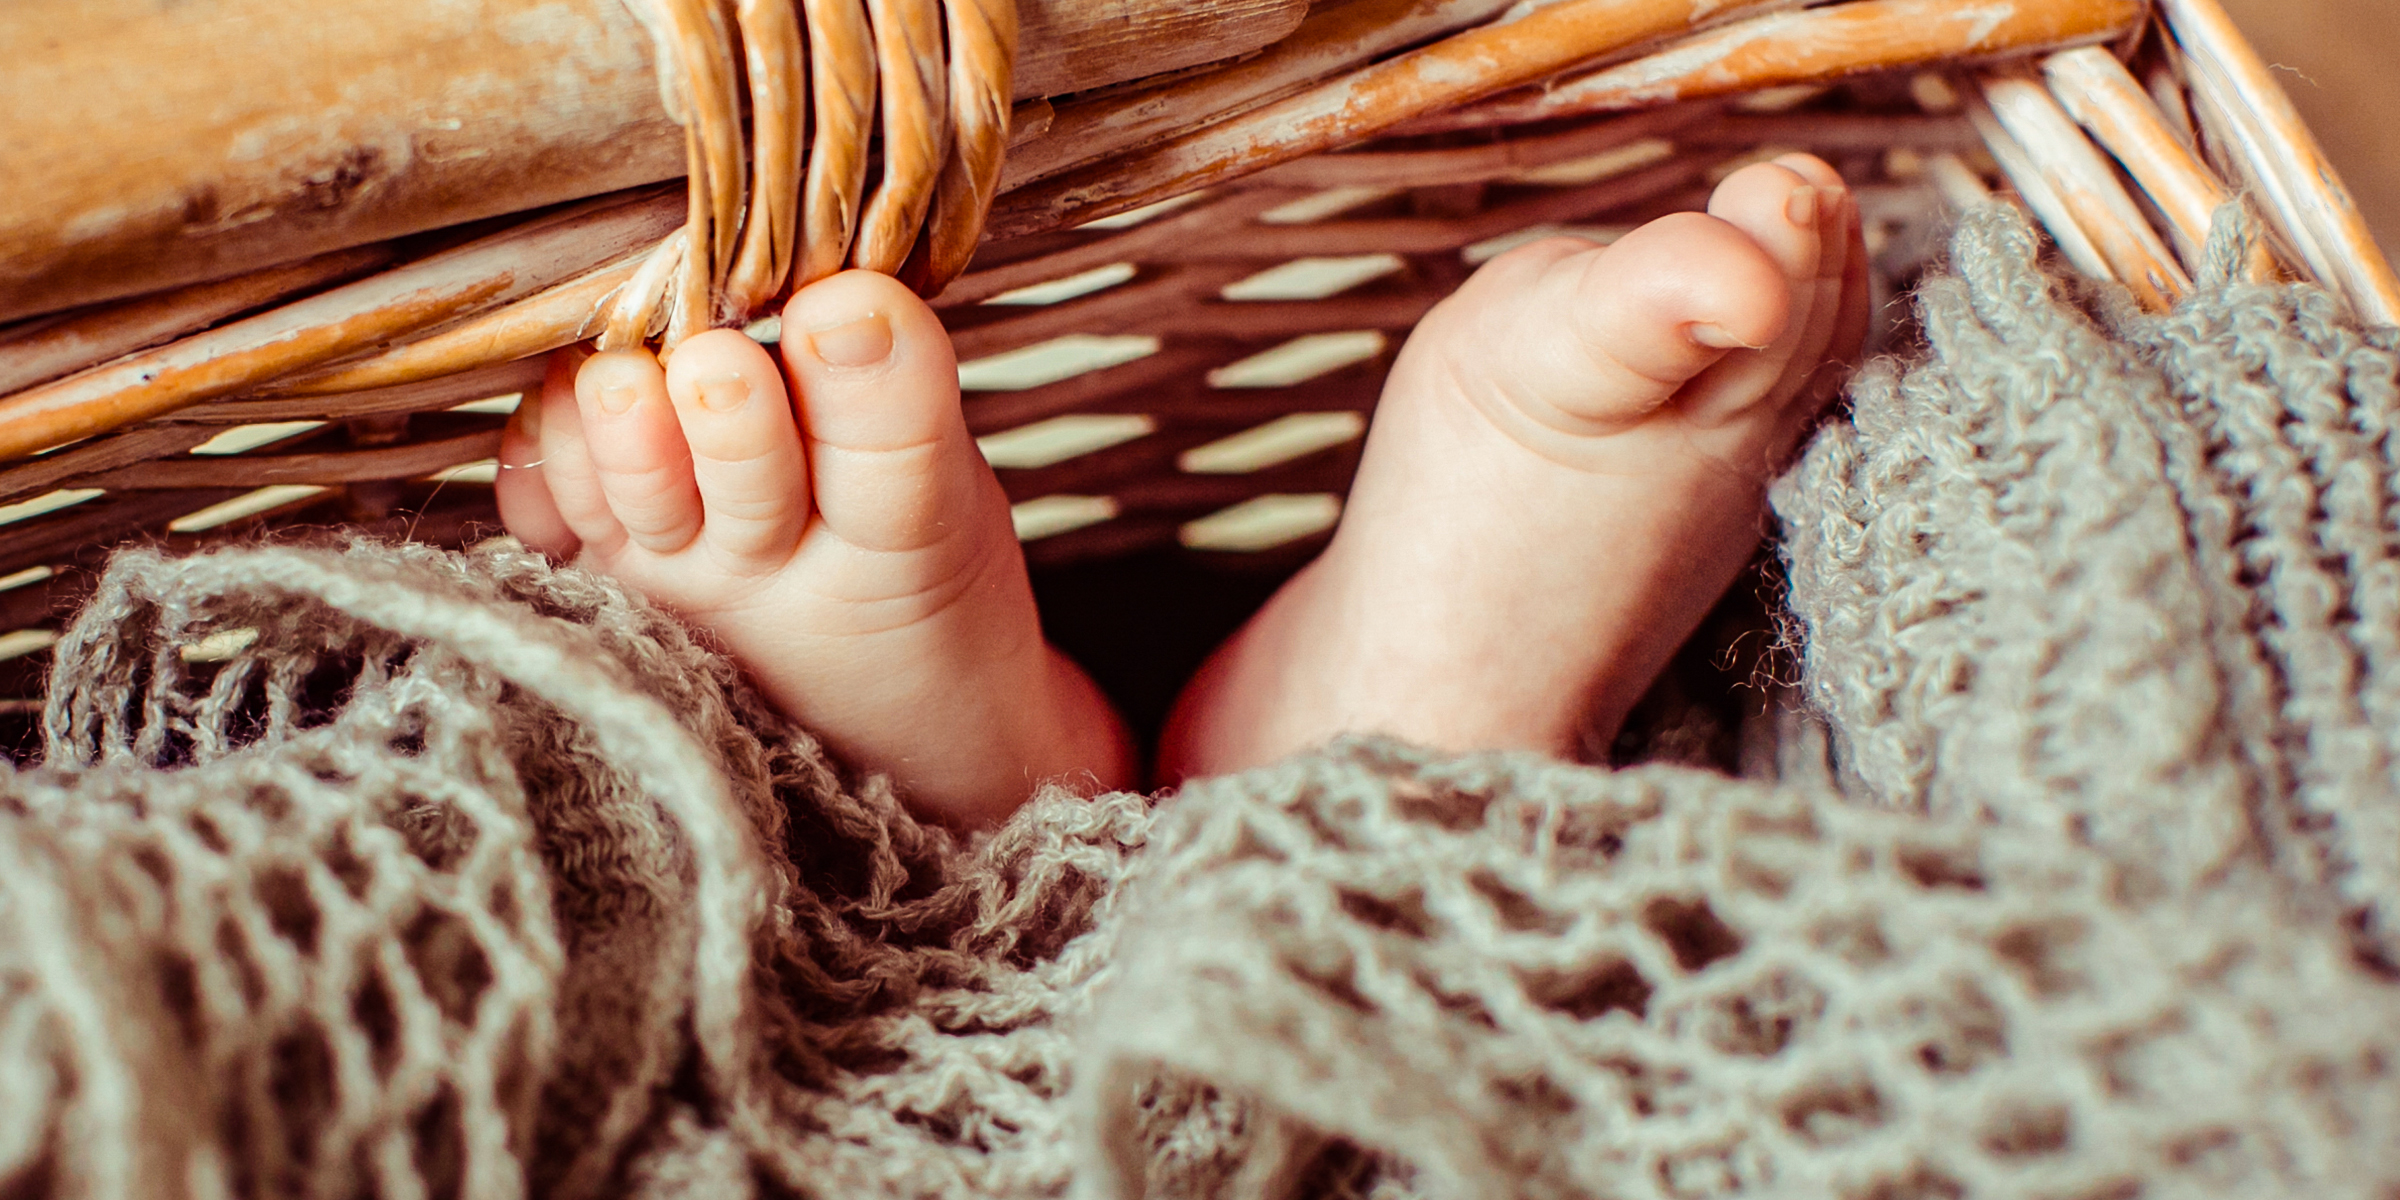 Füße eines Babys, das in einem Korb liegt | Quelle: Freepik